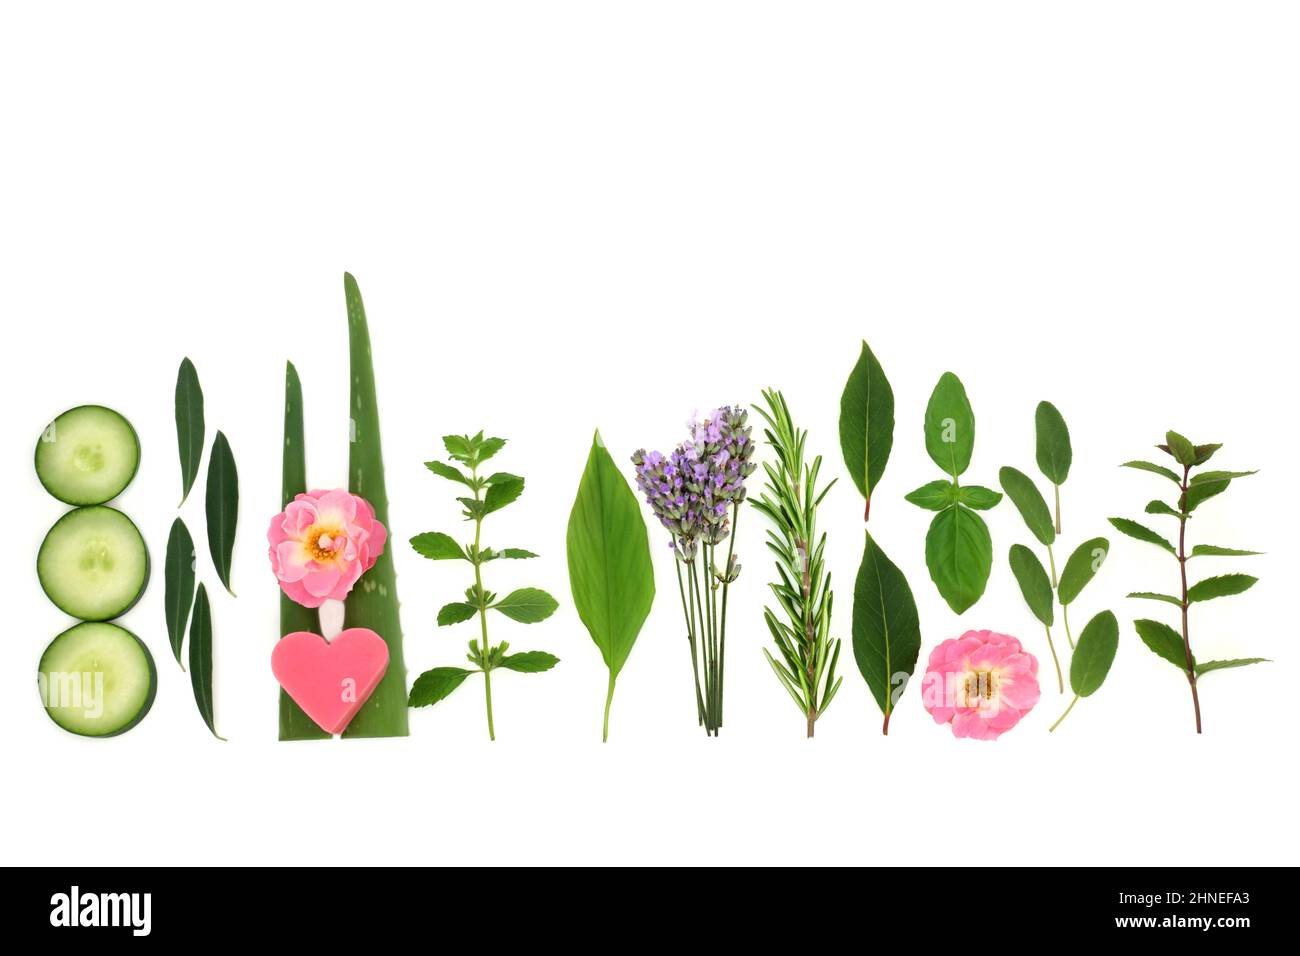 Natürliche Kräuter und Blumen für Anti-Aging-Hautpflegebehandlungen auf pflanzlicher Basis. Kann zur Behandlung von Psoriasis, Akne und Ekzemen verwendet werden. Stockfoto